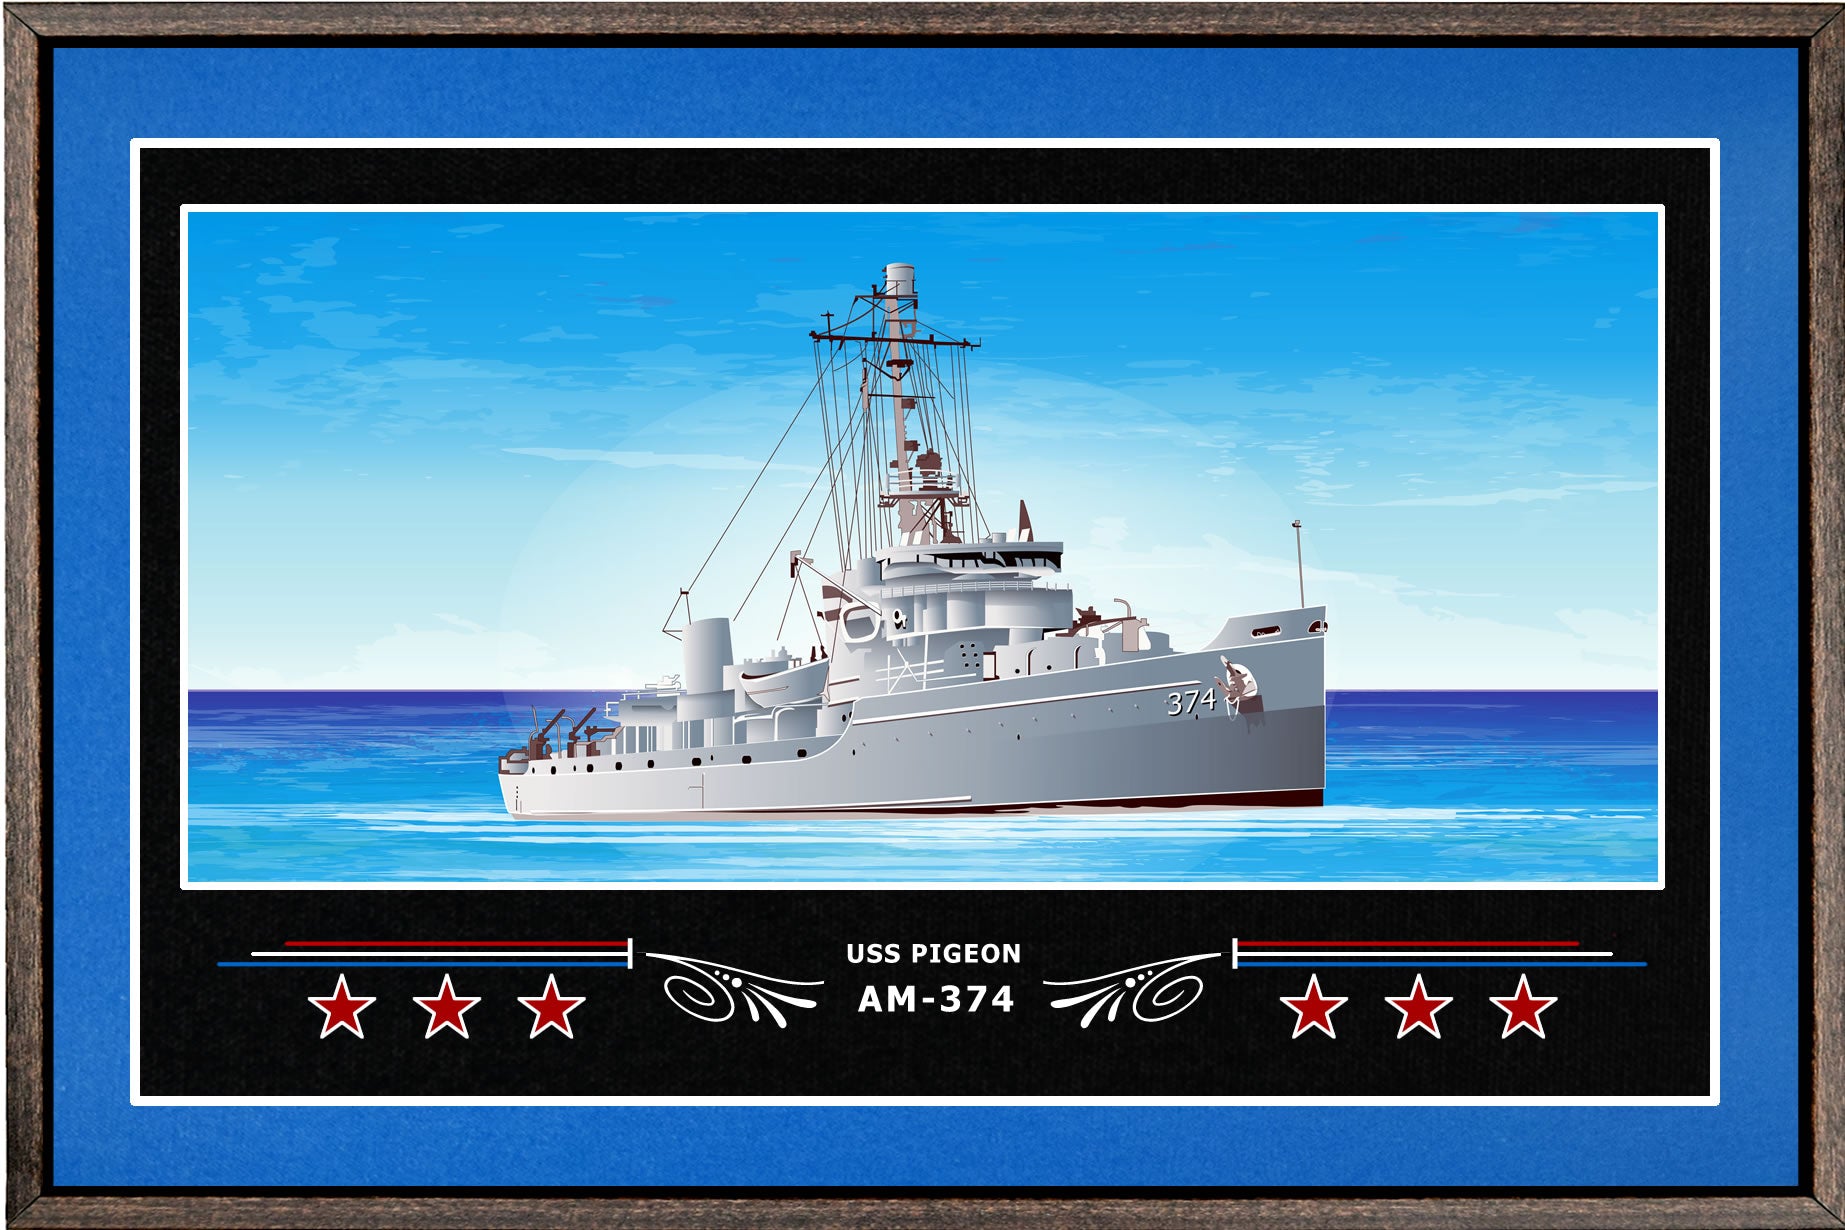 USS PIGEON AM 374 BOX FRAMED CANVAS ART BLUE